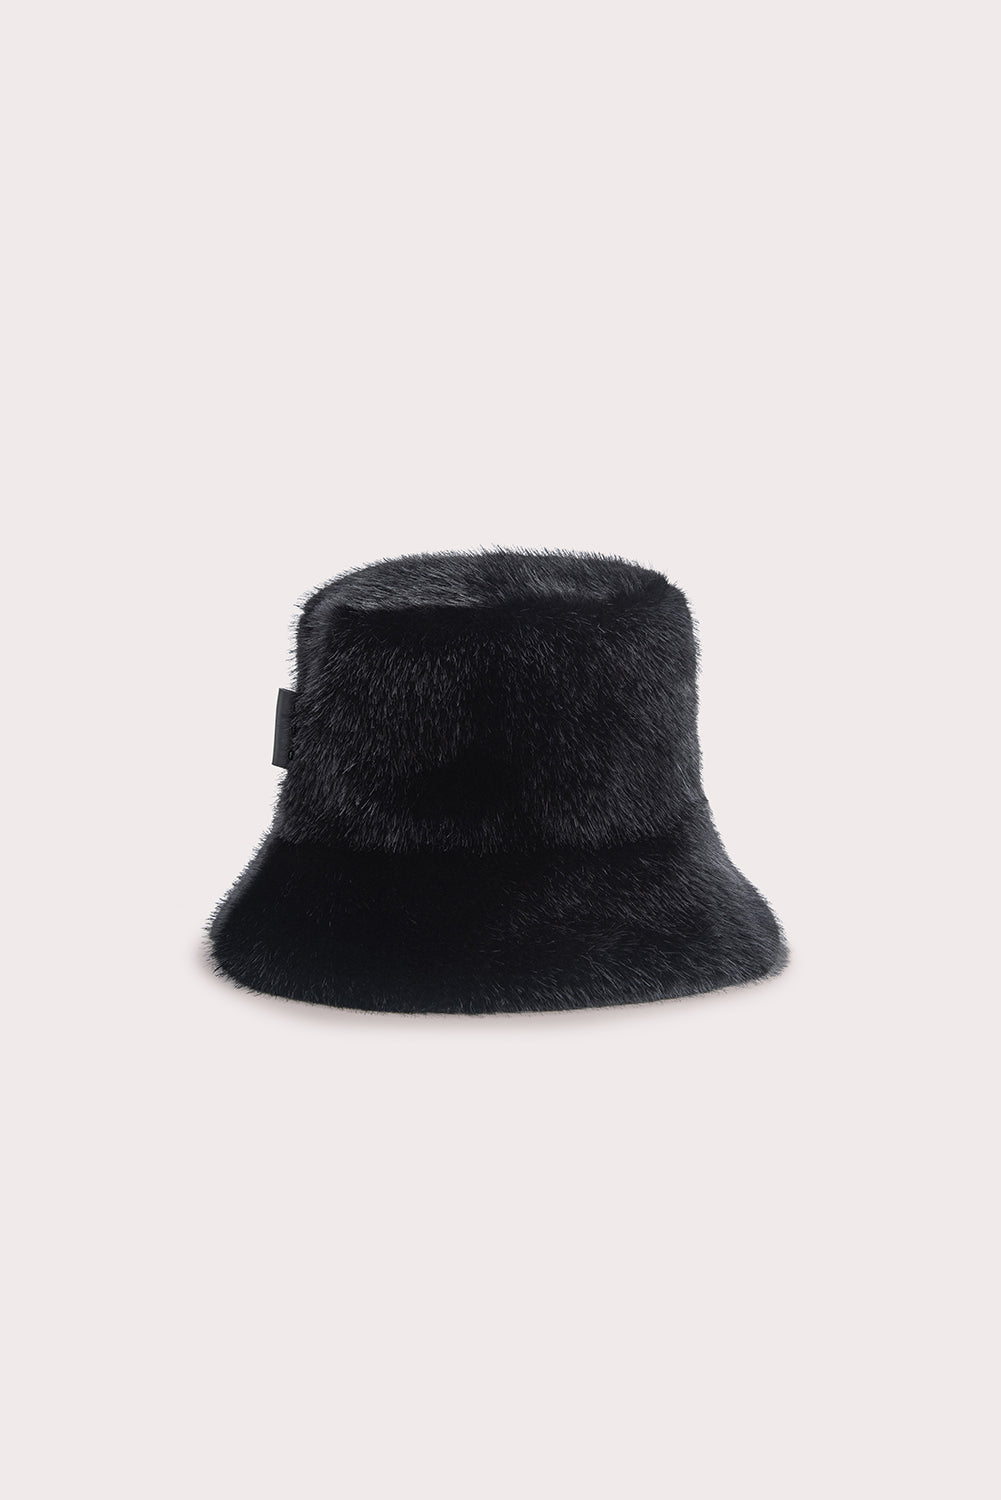 Fletcher Bucket Hat Black Faux Fur